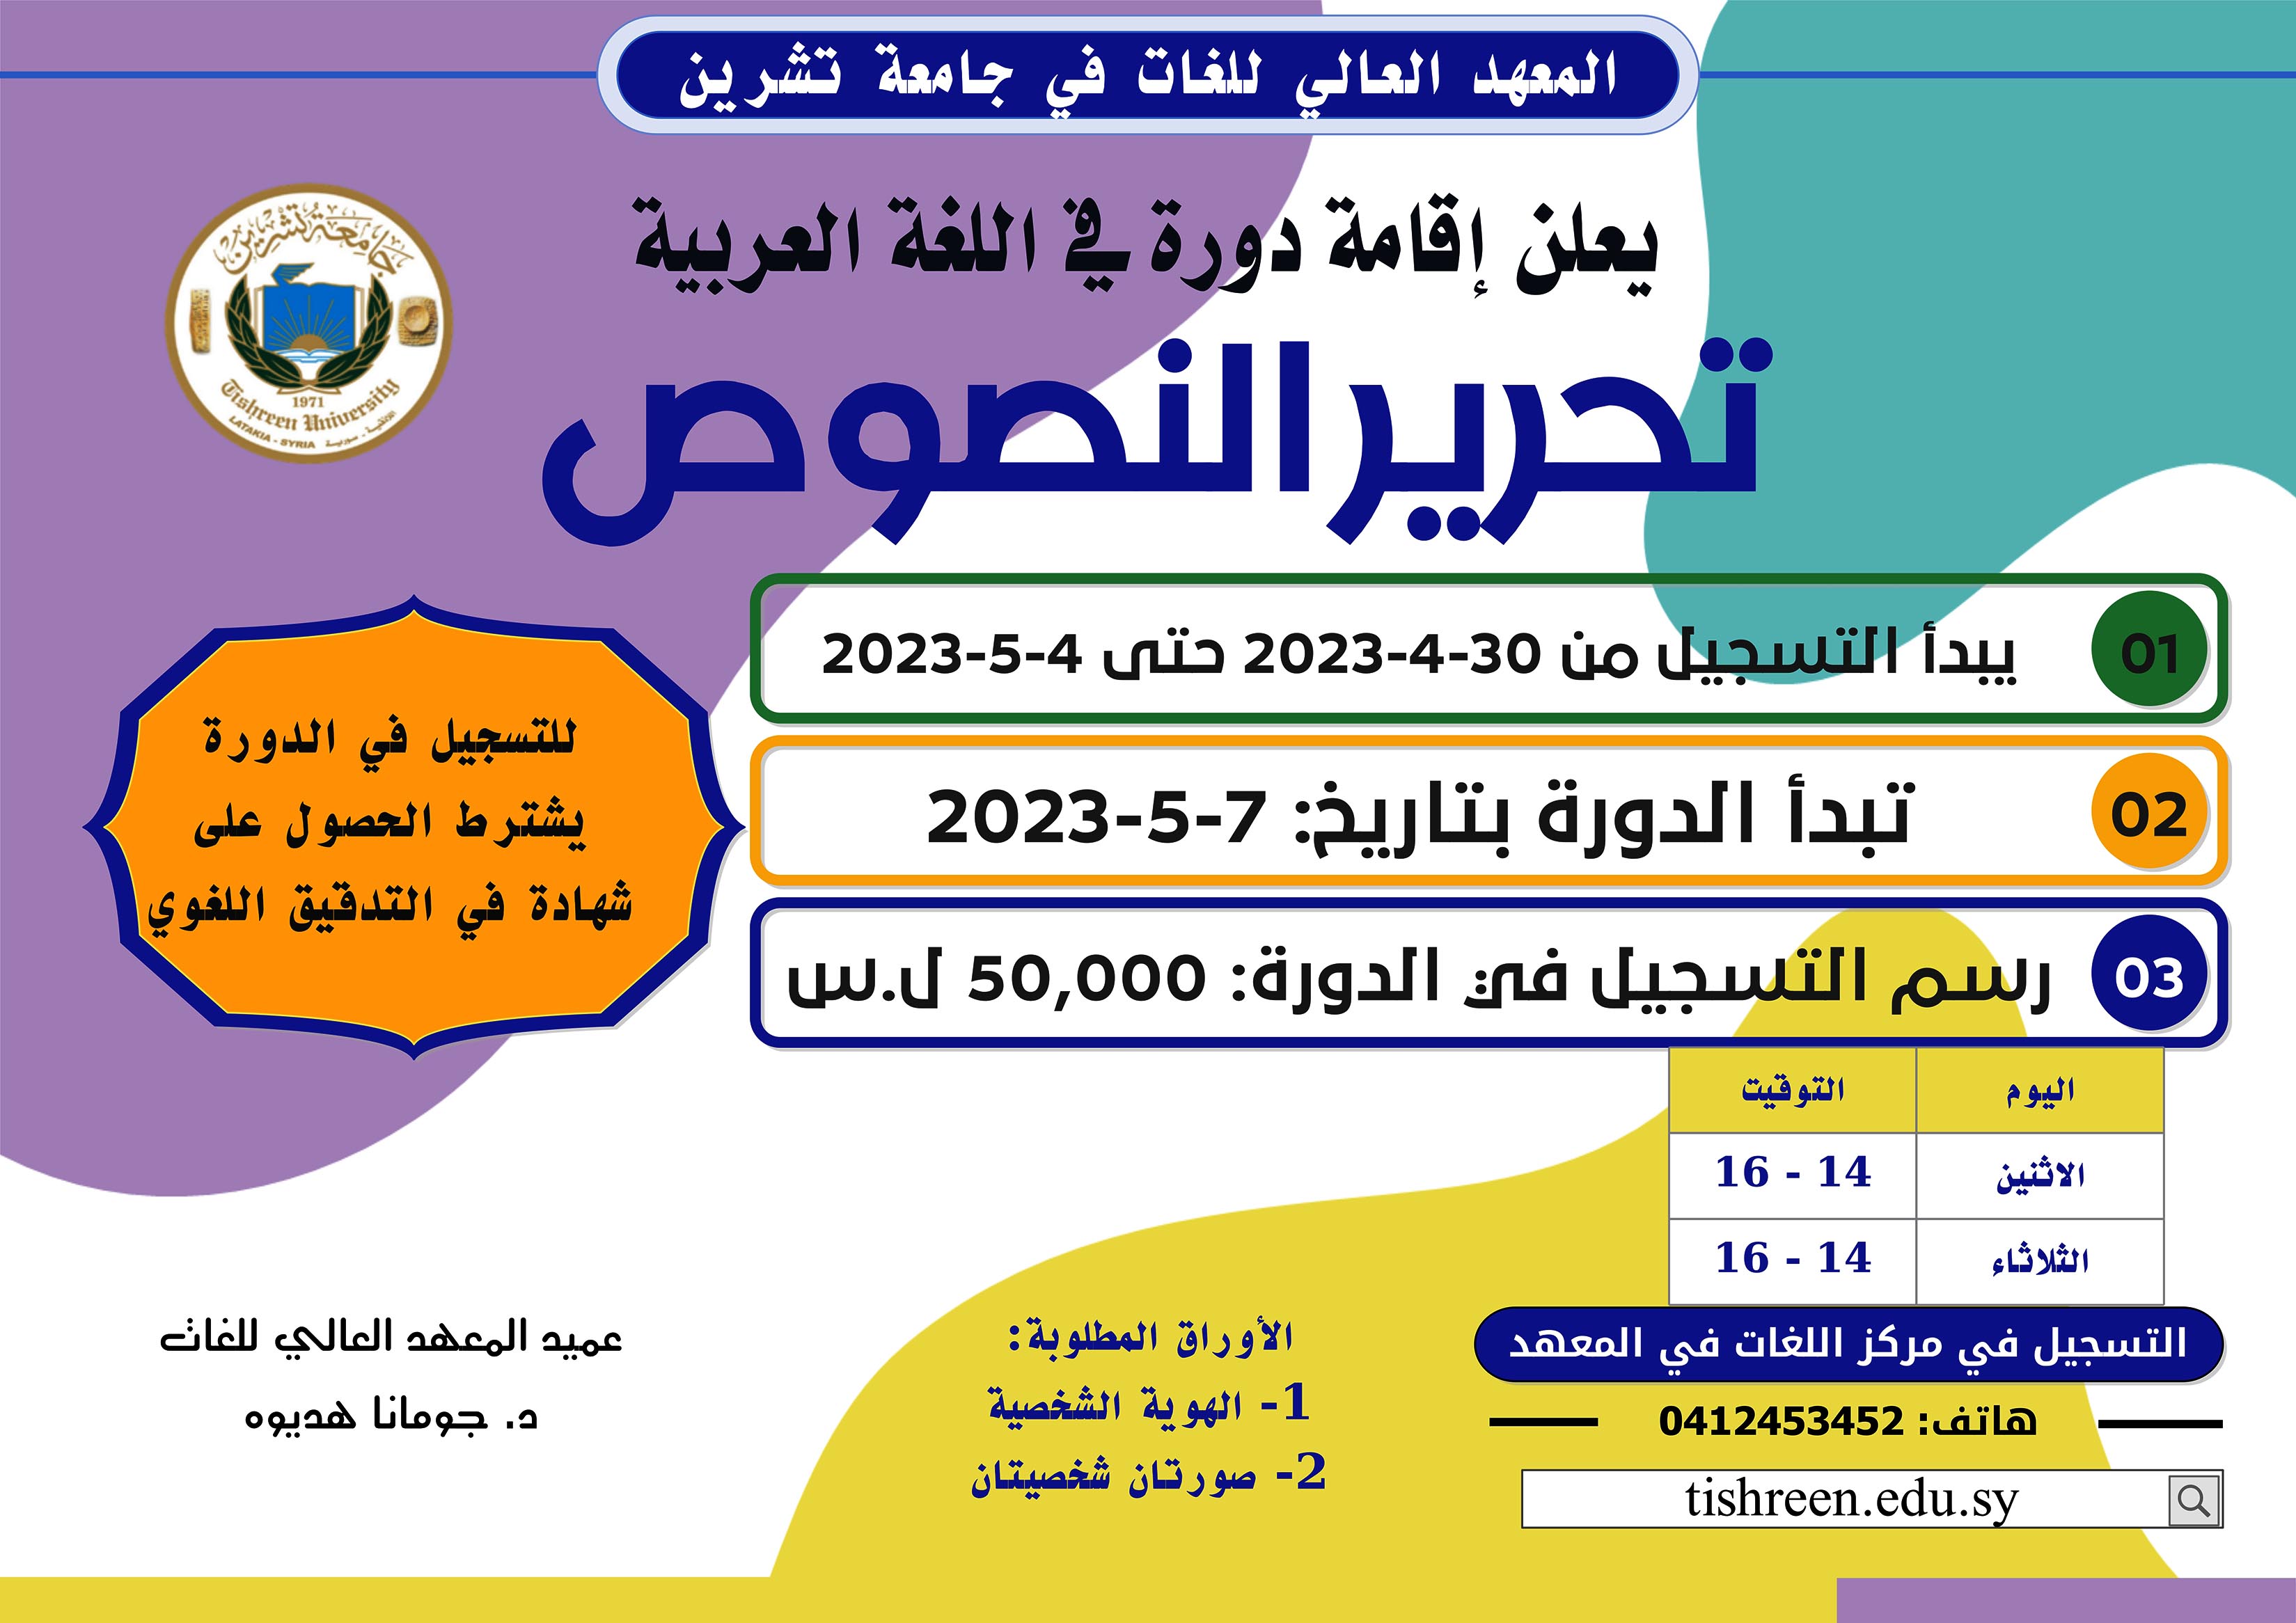 المعهد العالي للغات يعلن إقامة دورة تحرير النصوص في اللغة العربية تبدء بتاريخ 7-5-2023